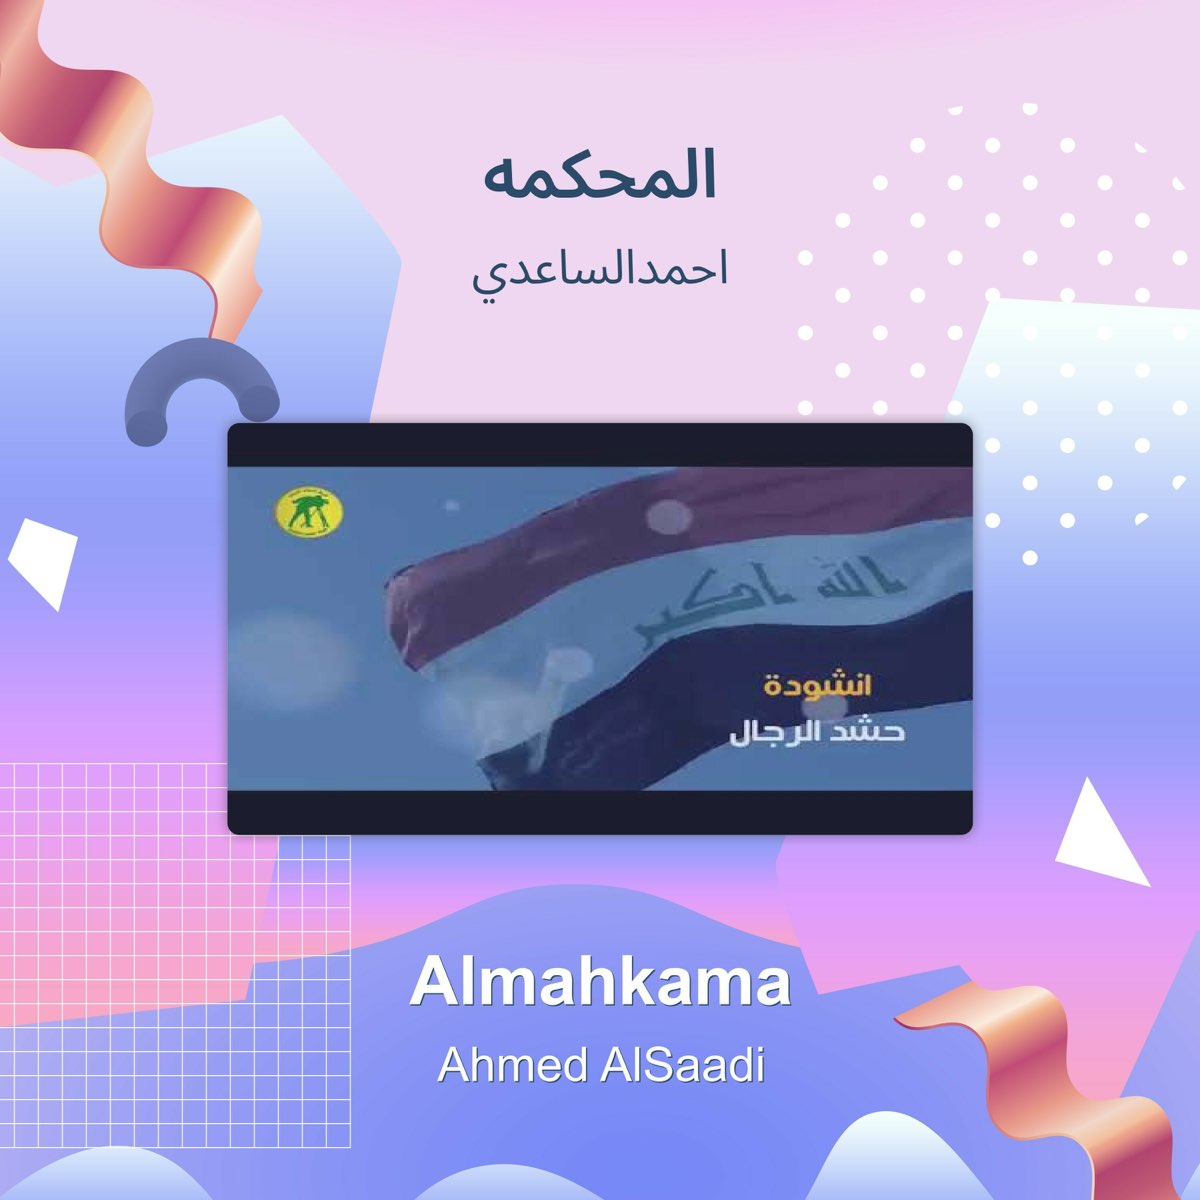 المحكمه - Single by احمدالساعدي on Apple Music